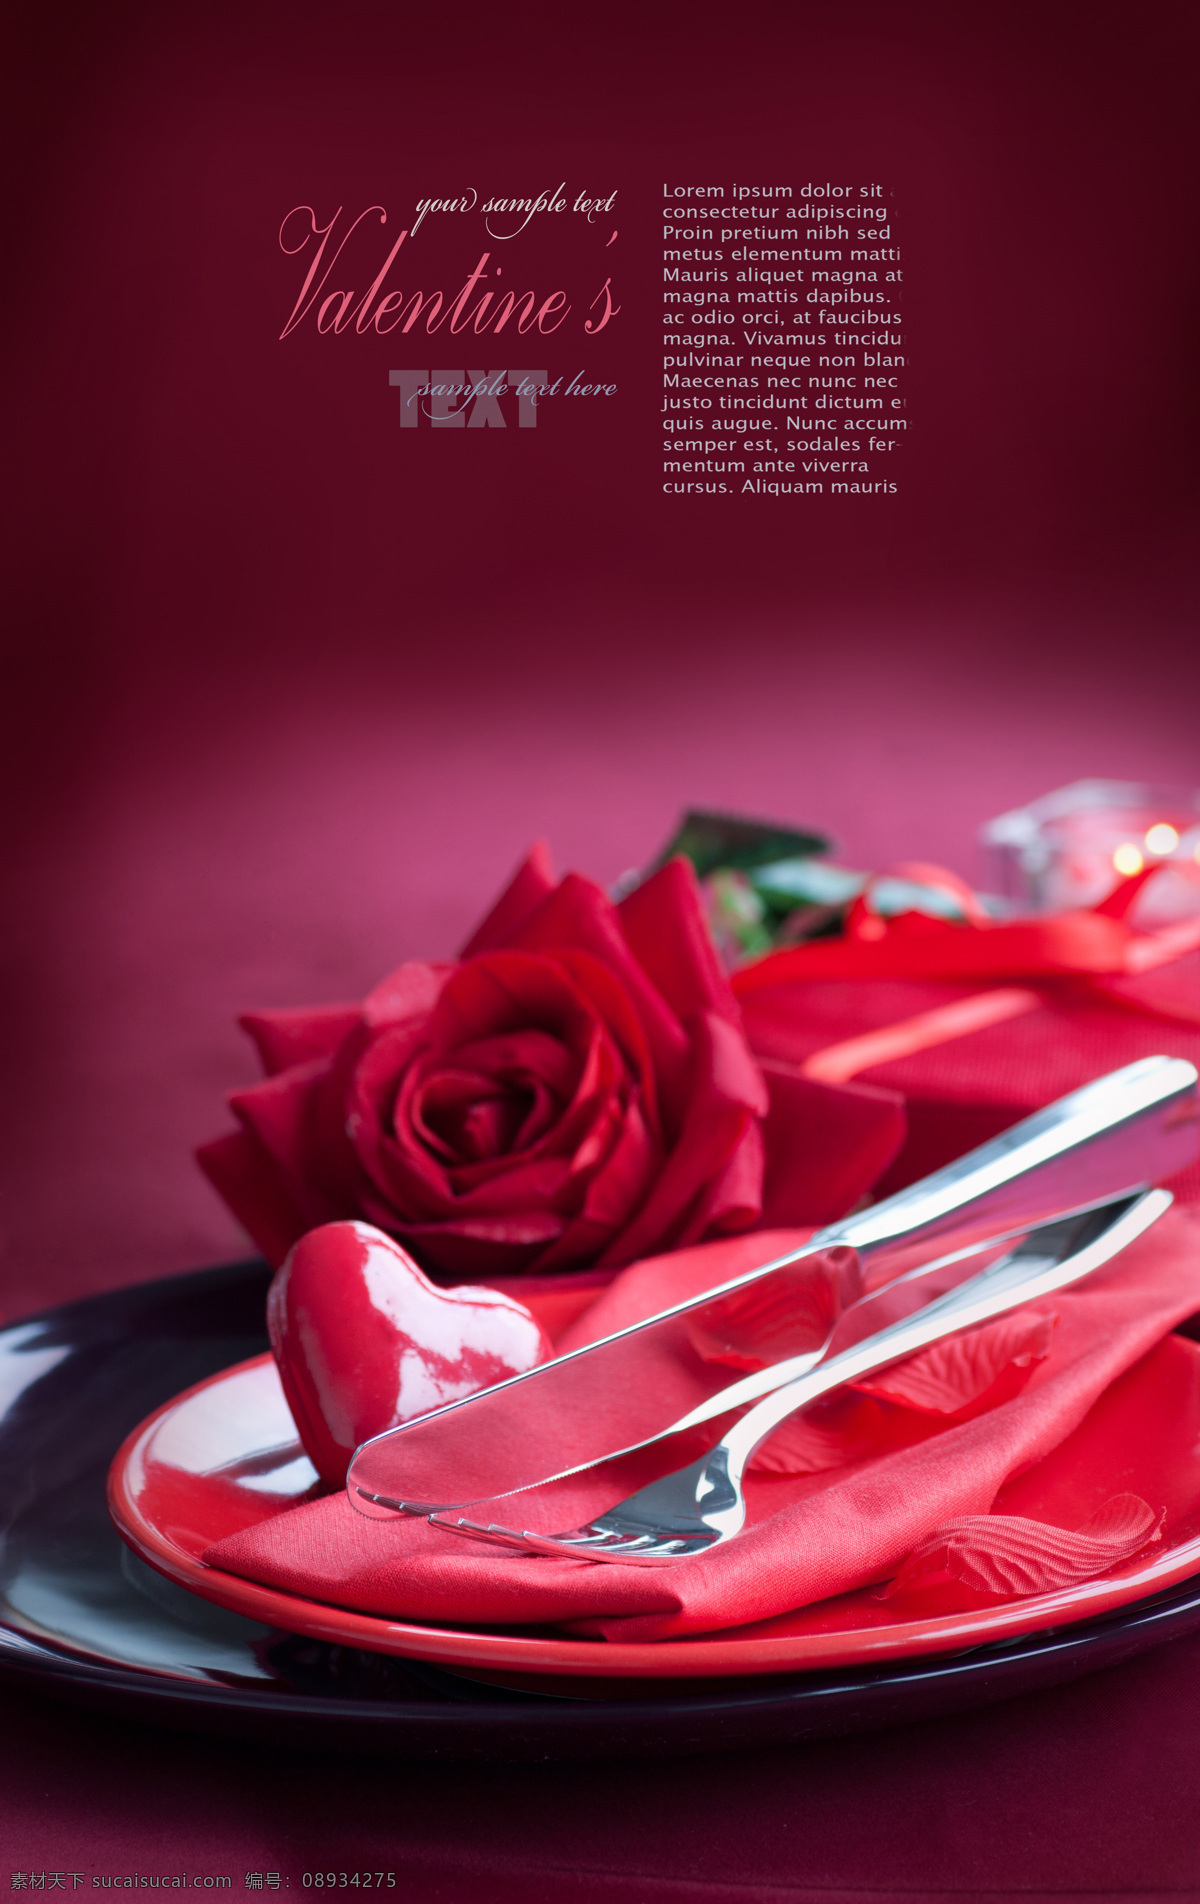 玫瑰花 刀叉 餐厅 西餐厅 餐具 鲜花 花朵 红玫瑰 温馨 浪漫 情人节 酒杯 情人节晚餐 餐具厨具 餐饮美食